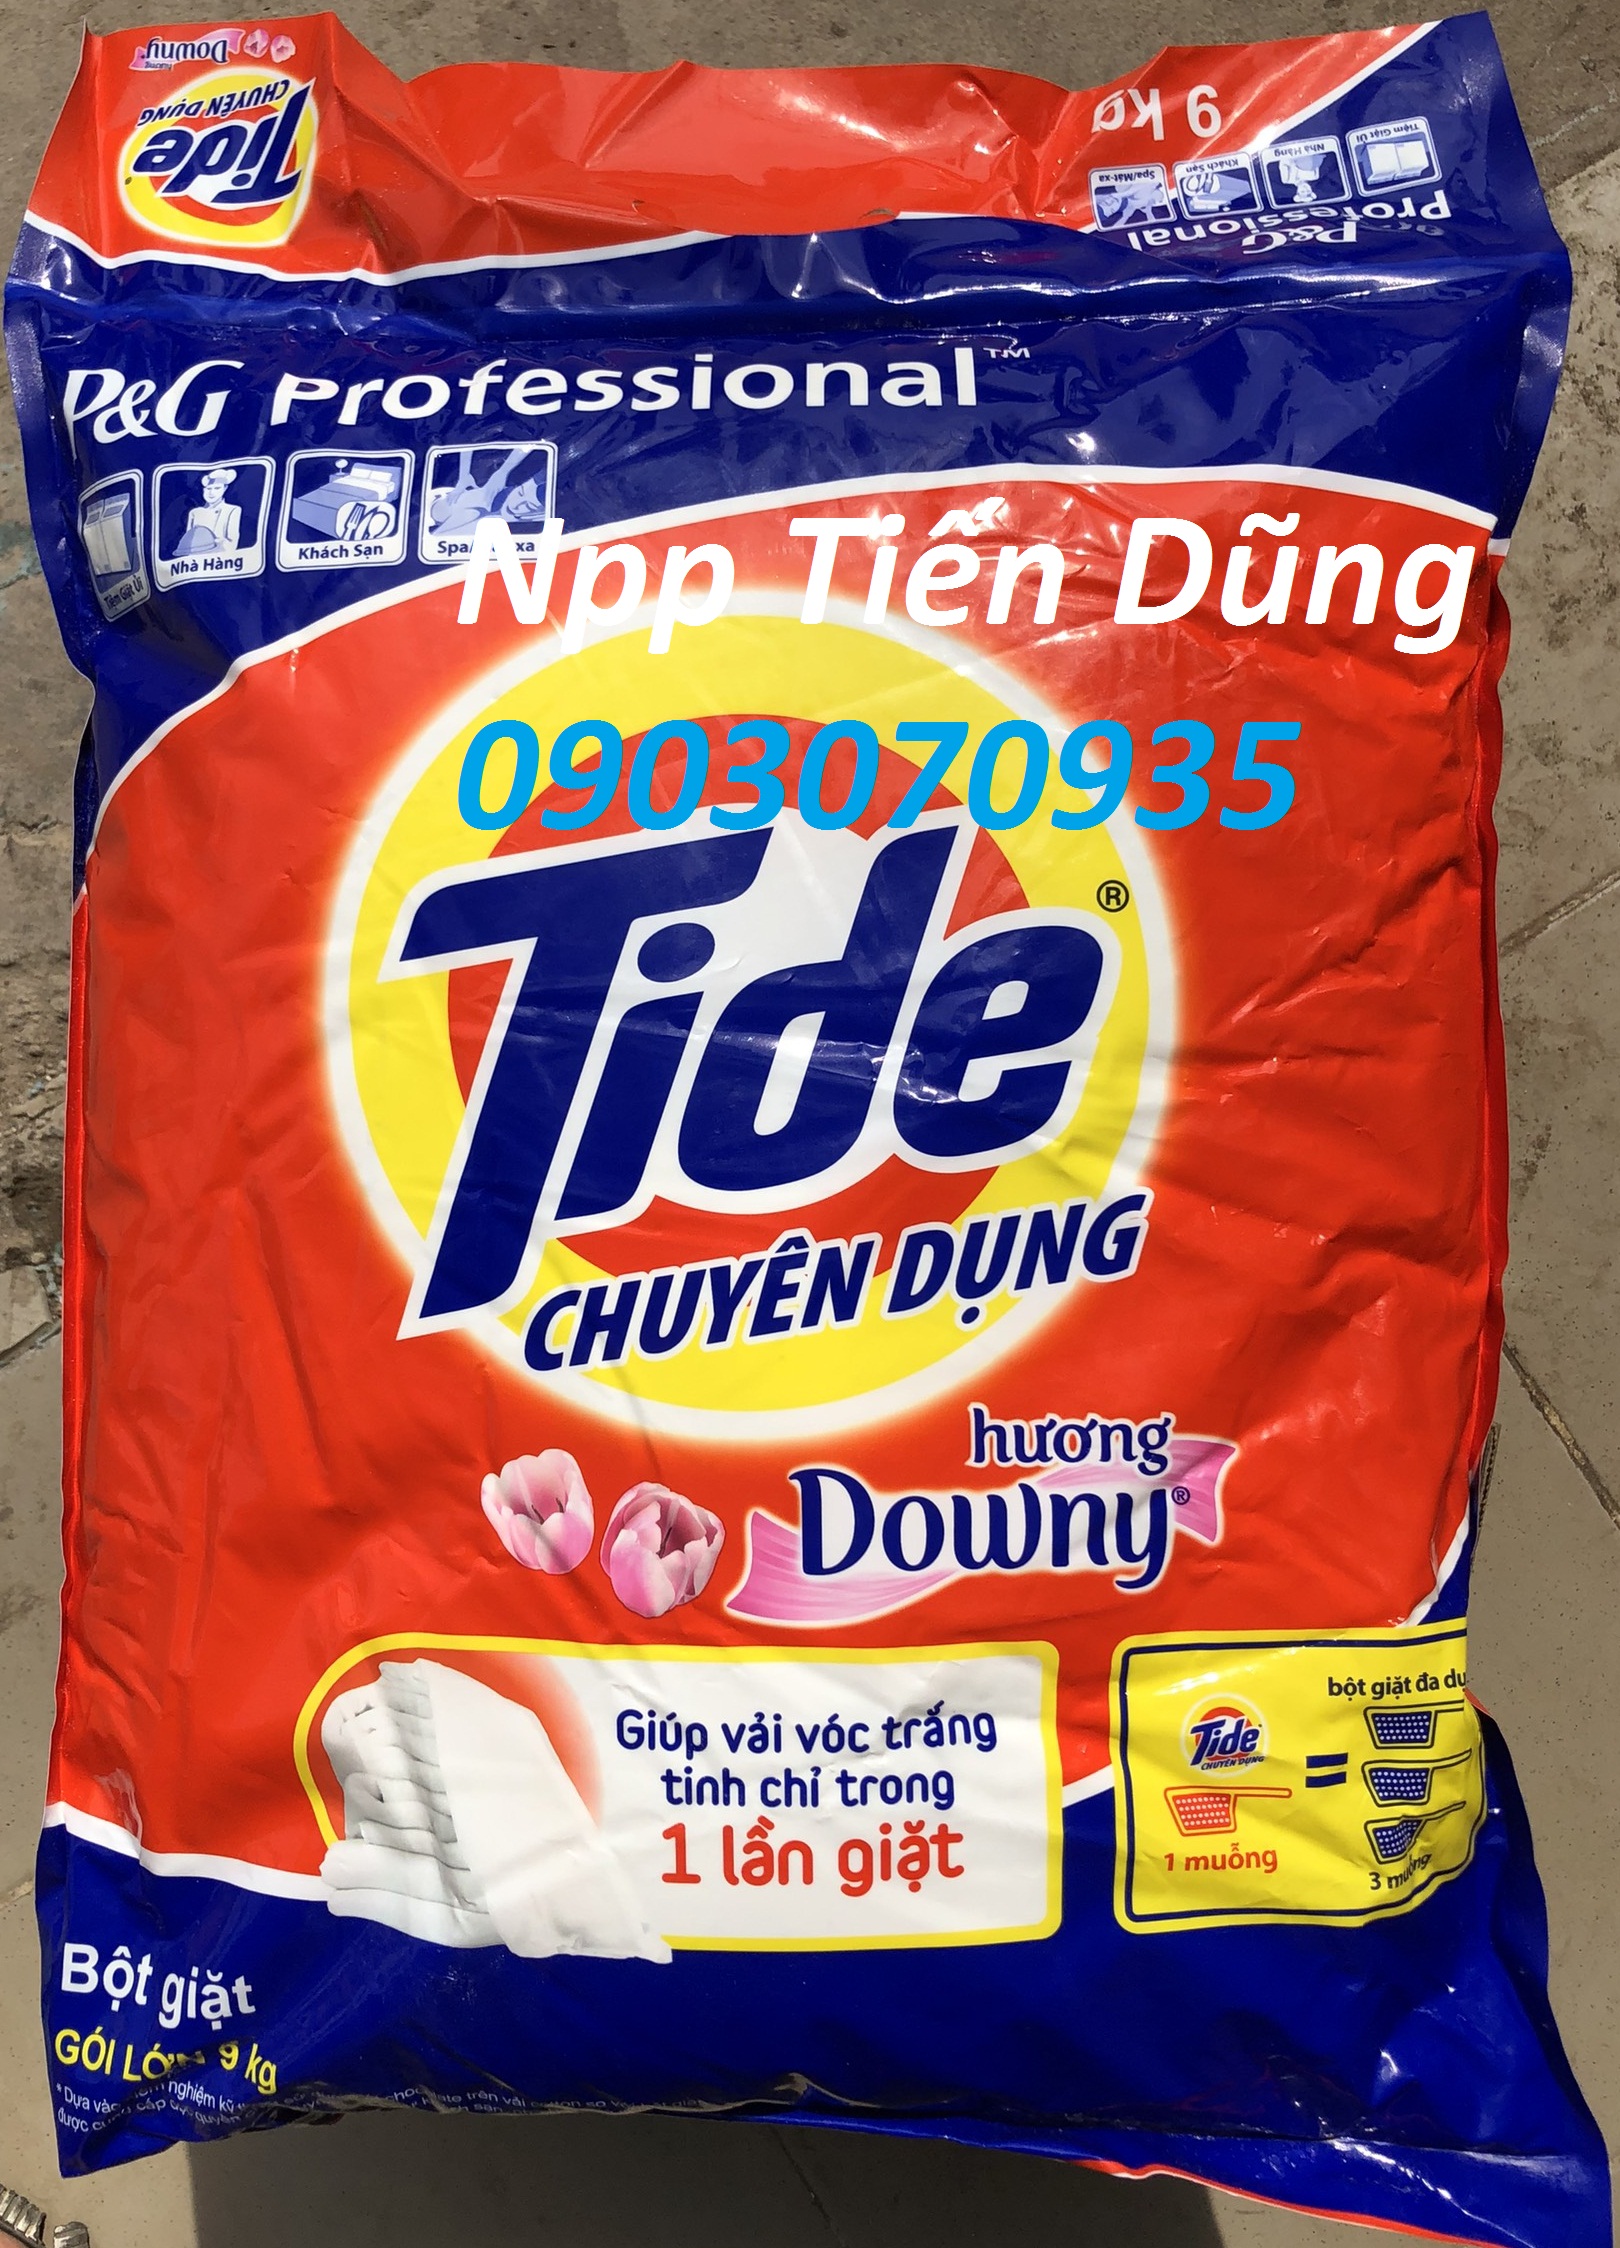 Bột giặt Tide Chuyên dụng 9kg hương Downy